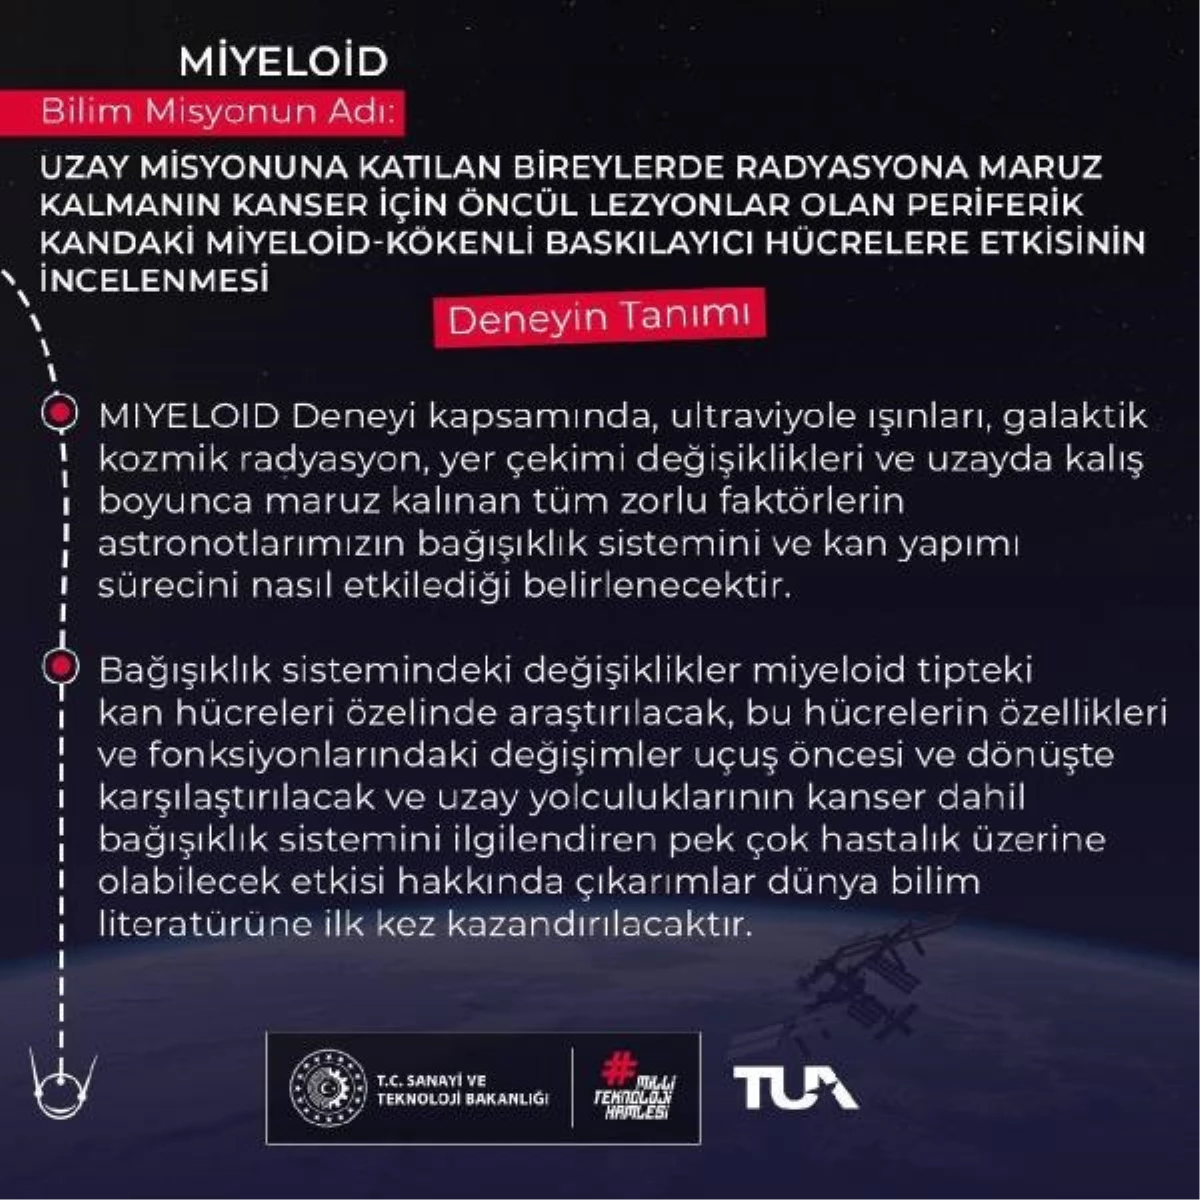 Sanayi ve Teknoloji Bakanı, Uluslararası Uzay İstasyonu\'nda yapılacak Miyeloid deneyini tanıttı